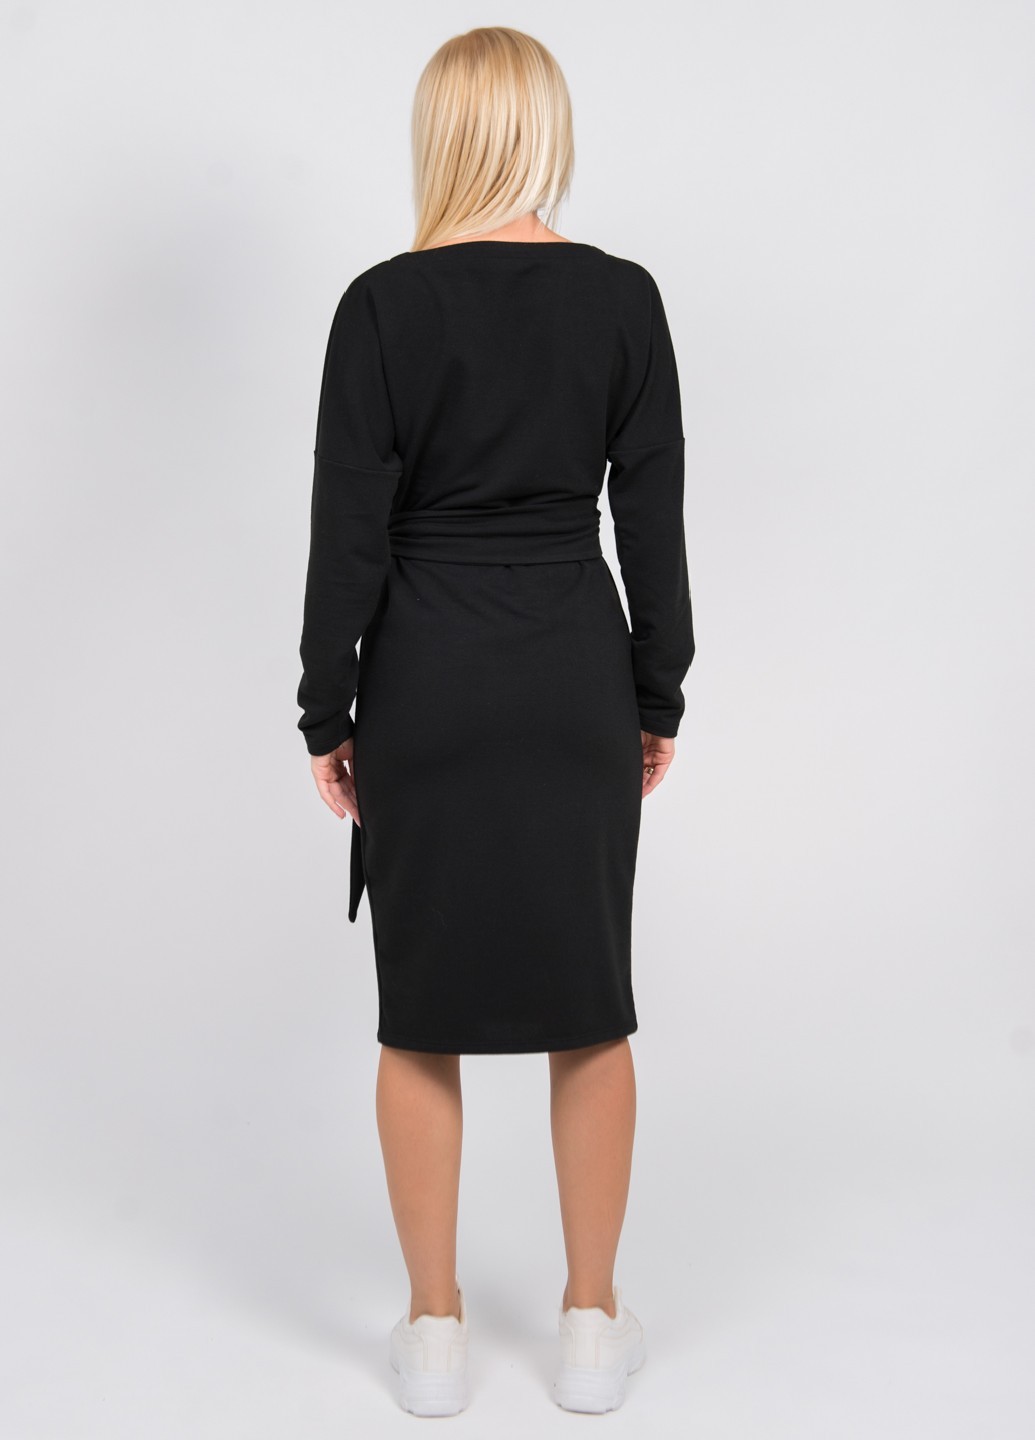 Платье женское трикотажное черное 02510 оптом